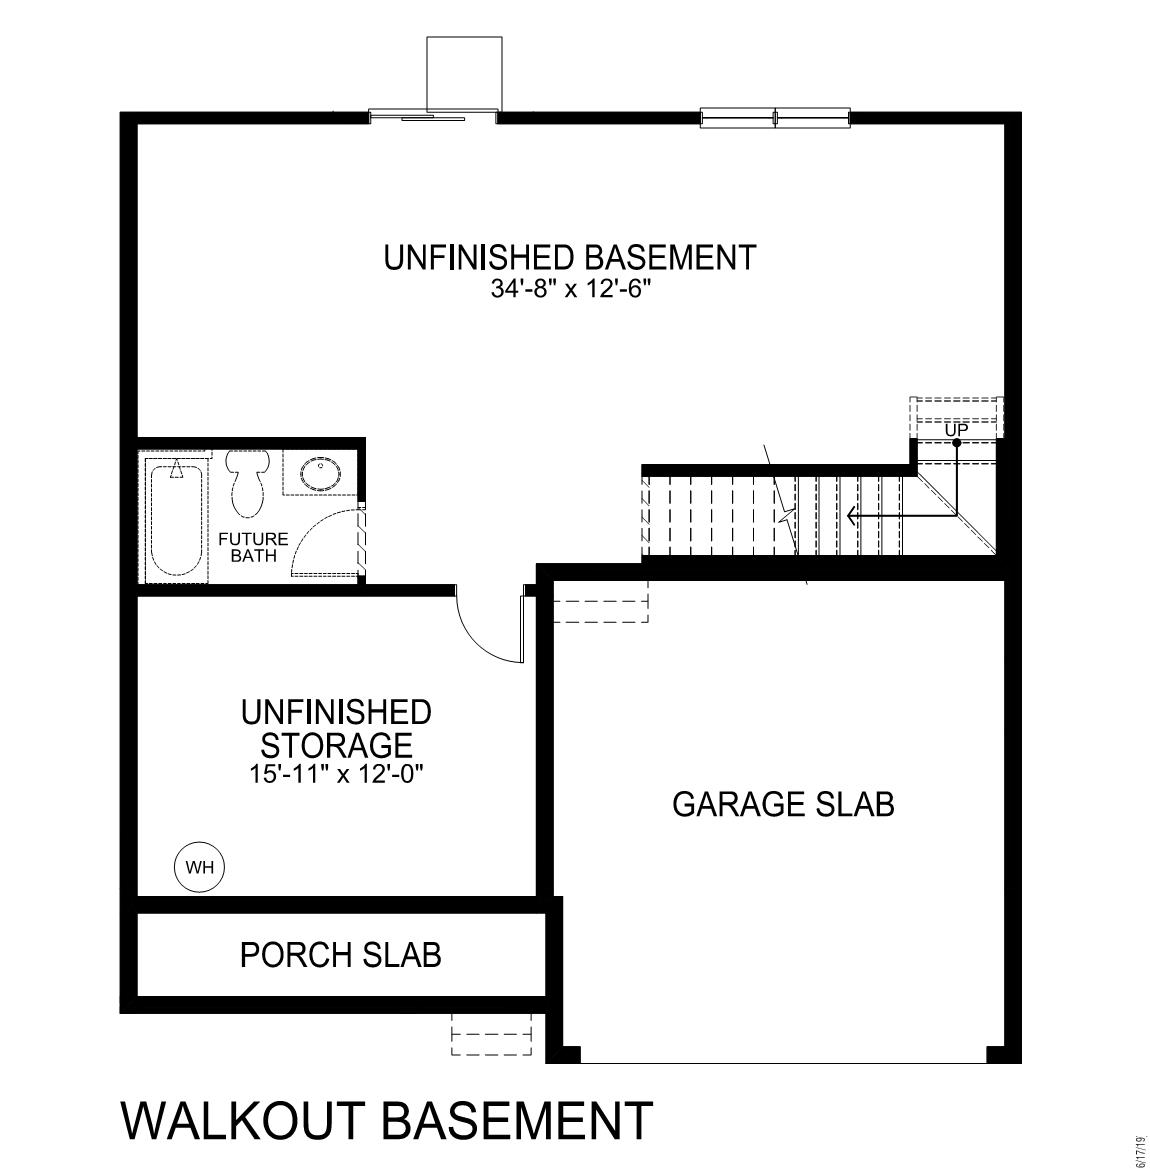 Pinehurst basement plan